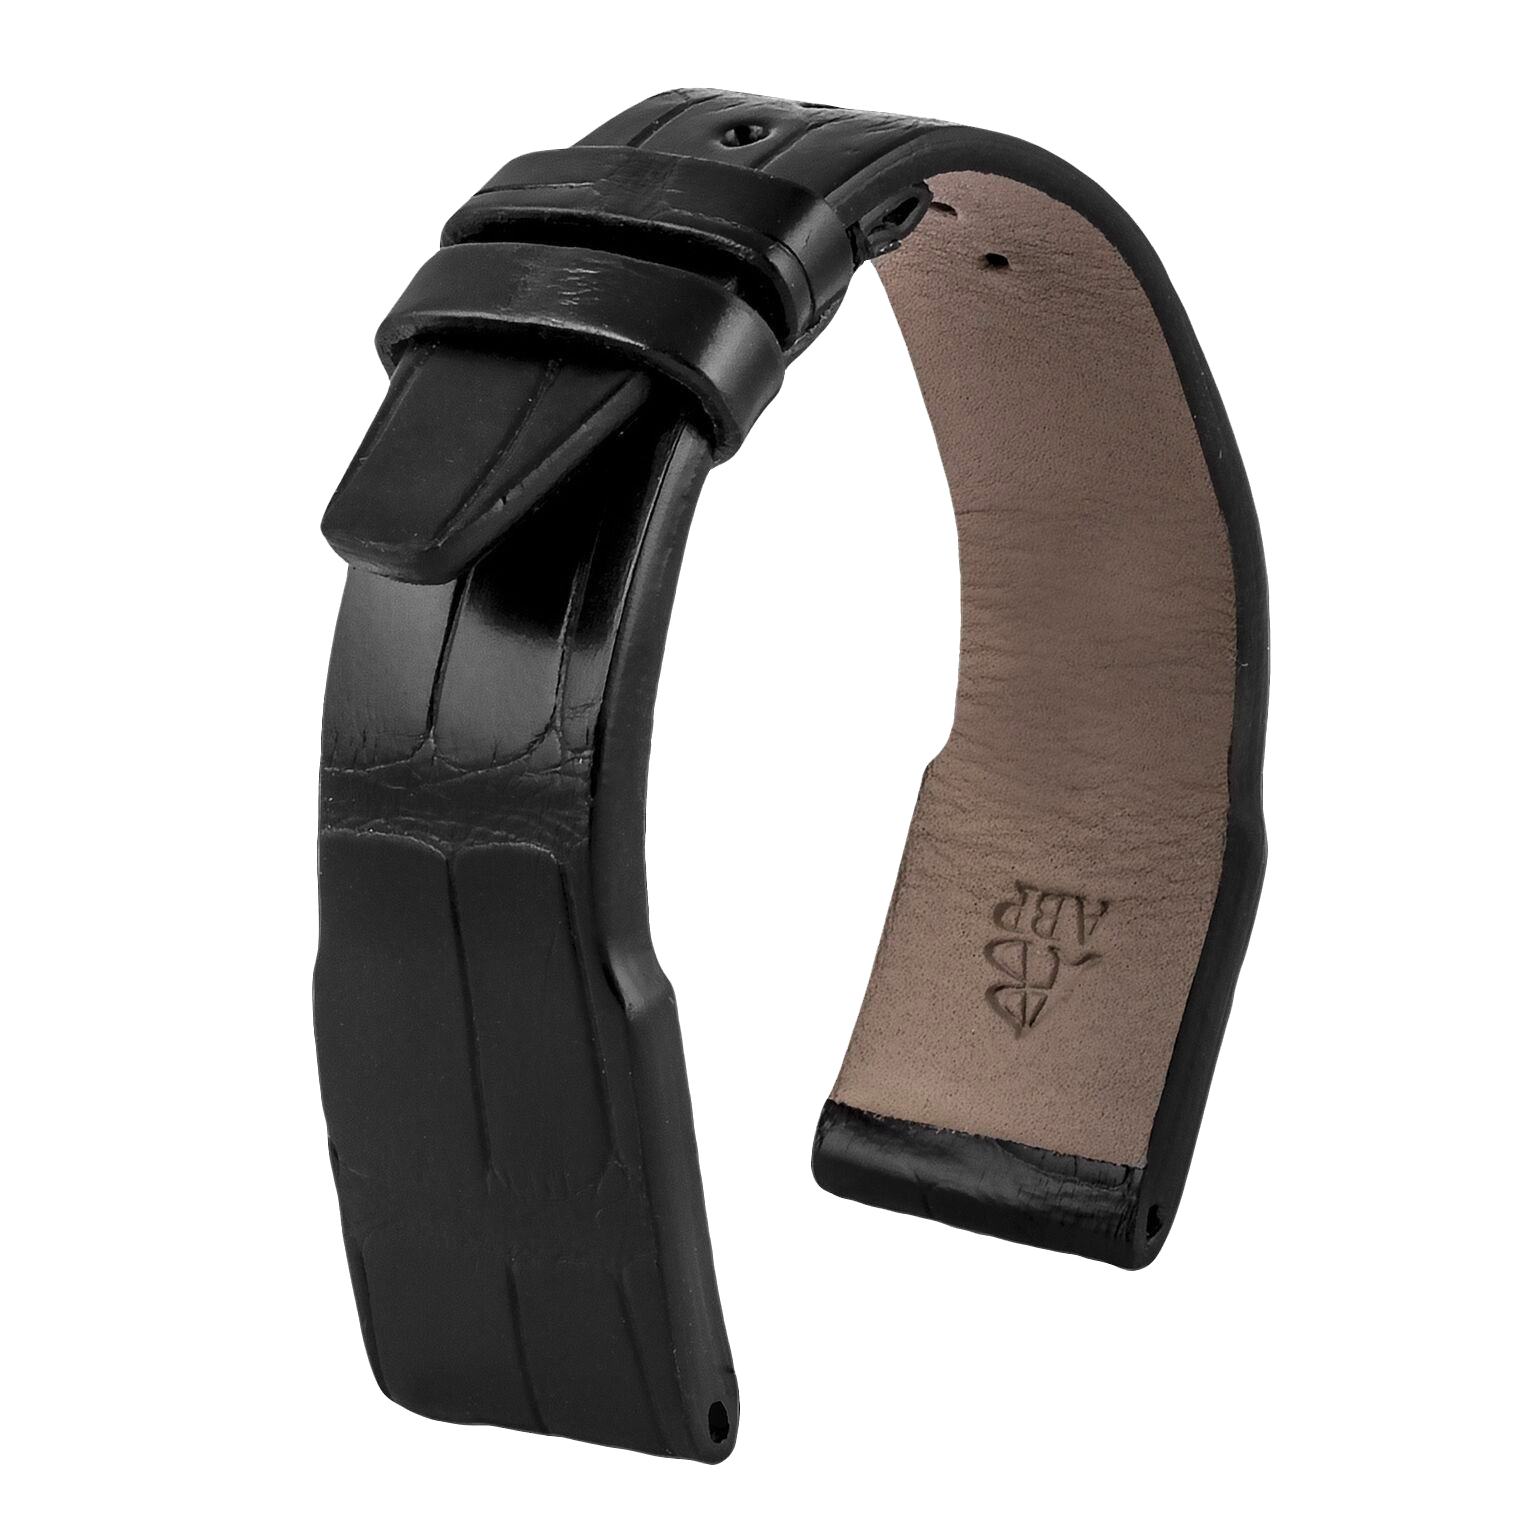 IWC Pilot - Bracelet de montre cuir - Alligator (noir, marron, gris, bleu) - watch band leather strap - ABP Concept -